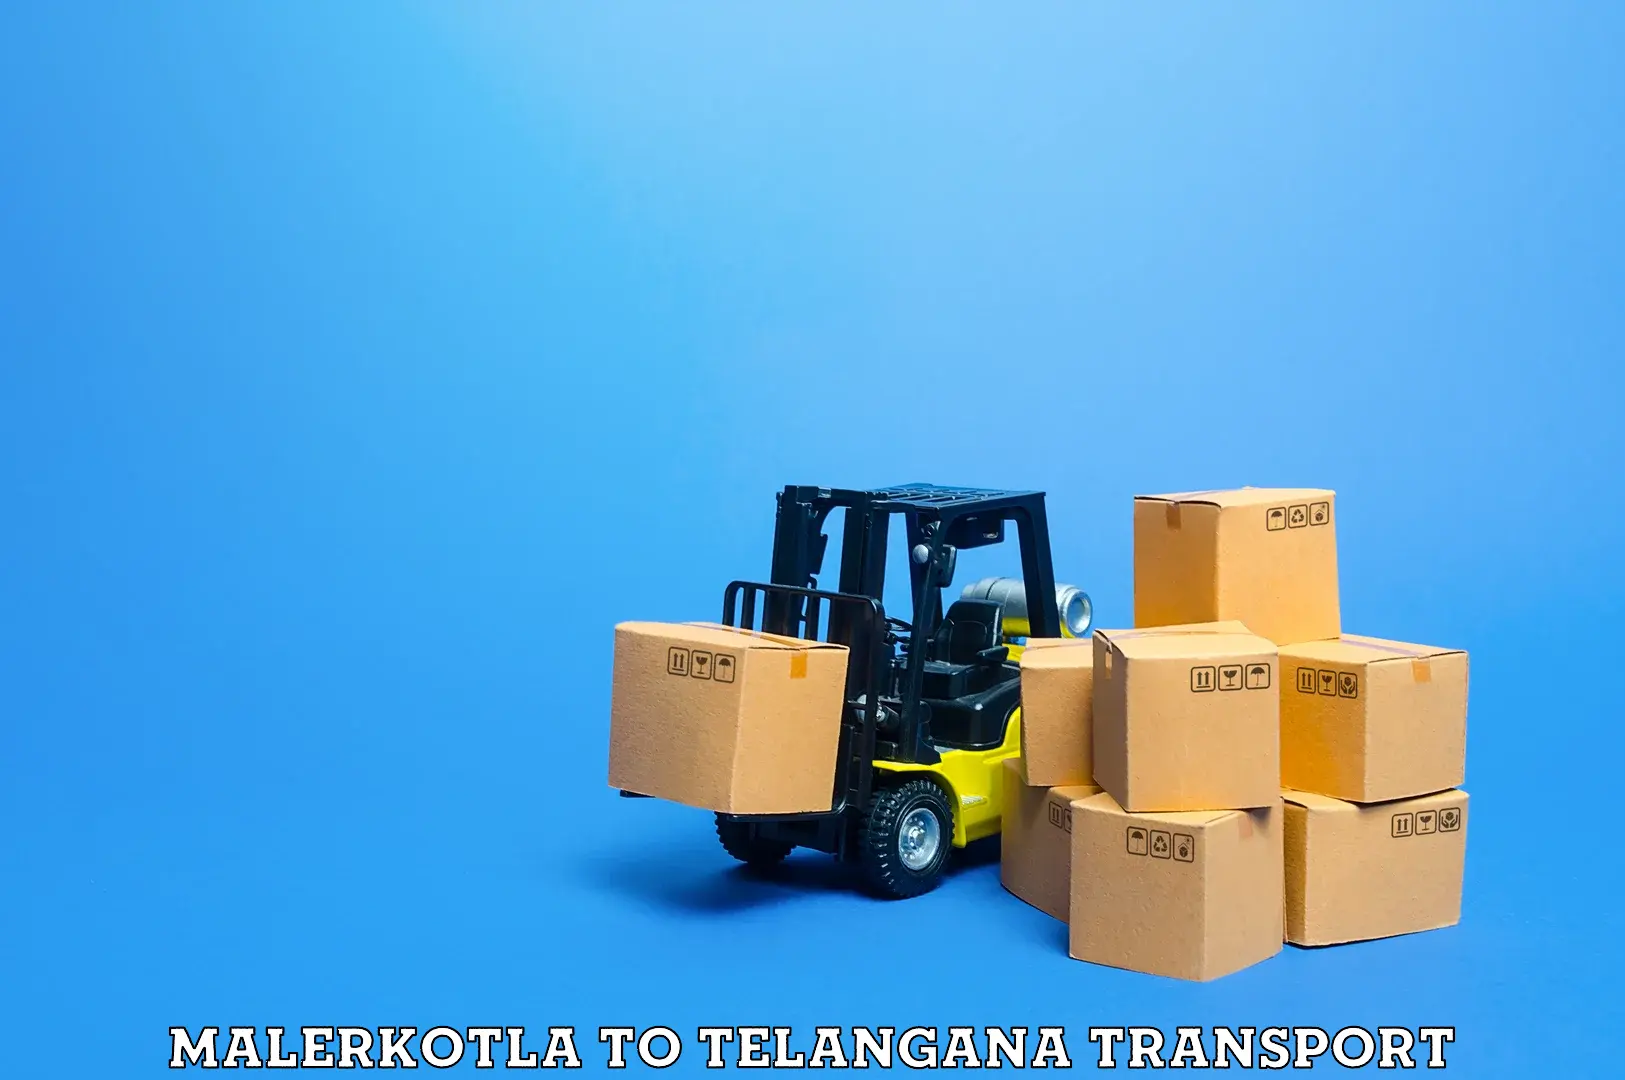 Furniture transport service in Malerkotla to Narmetta